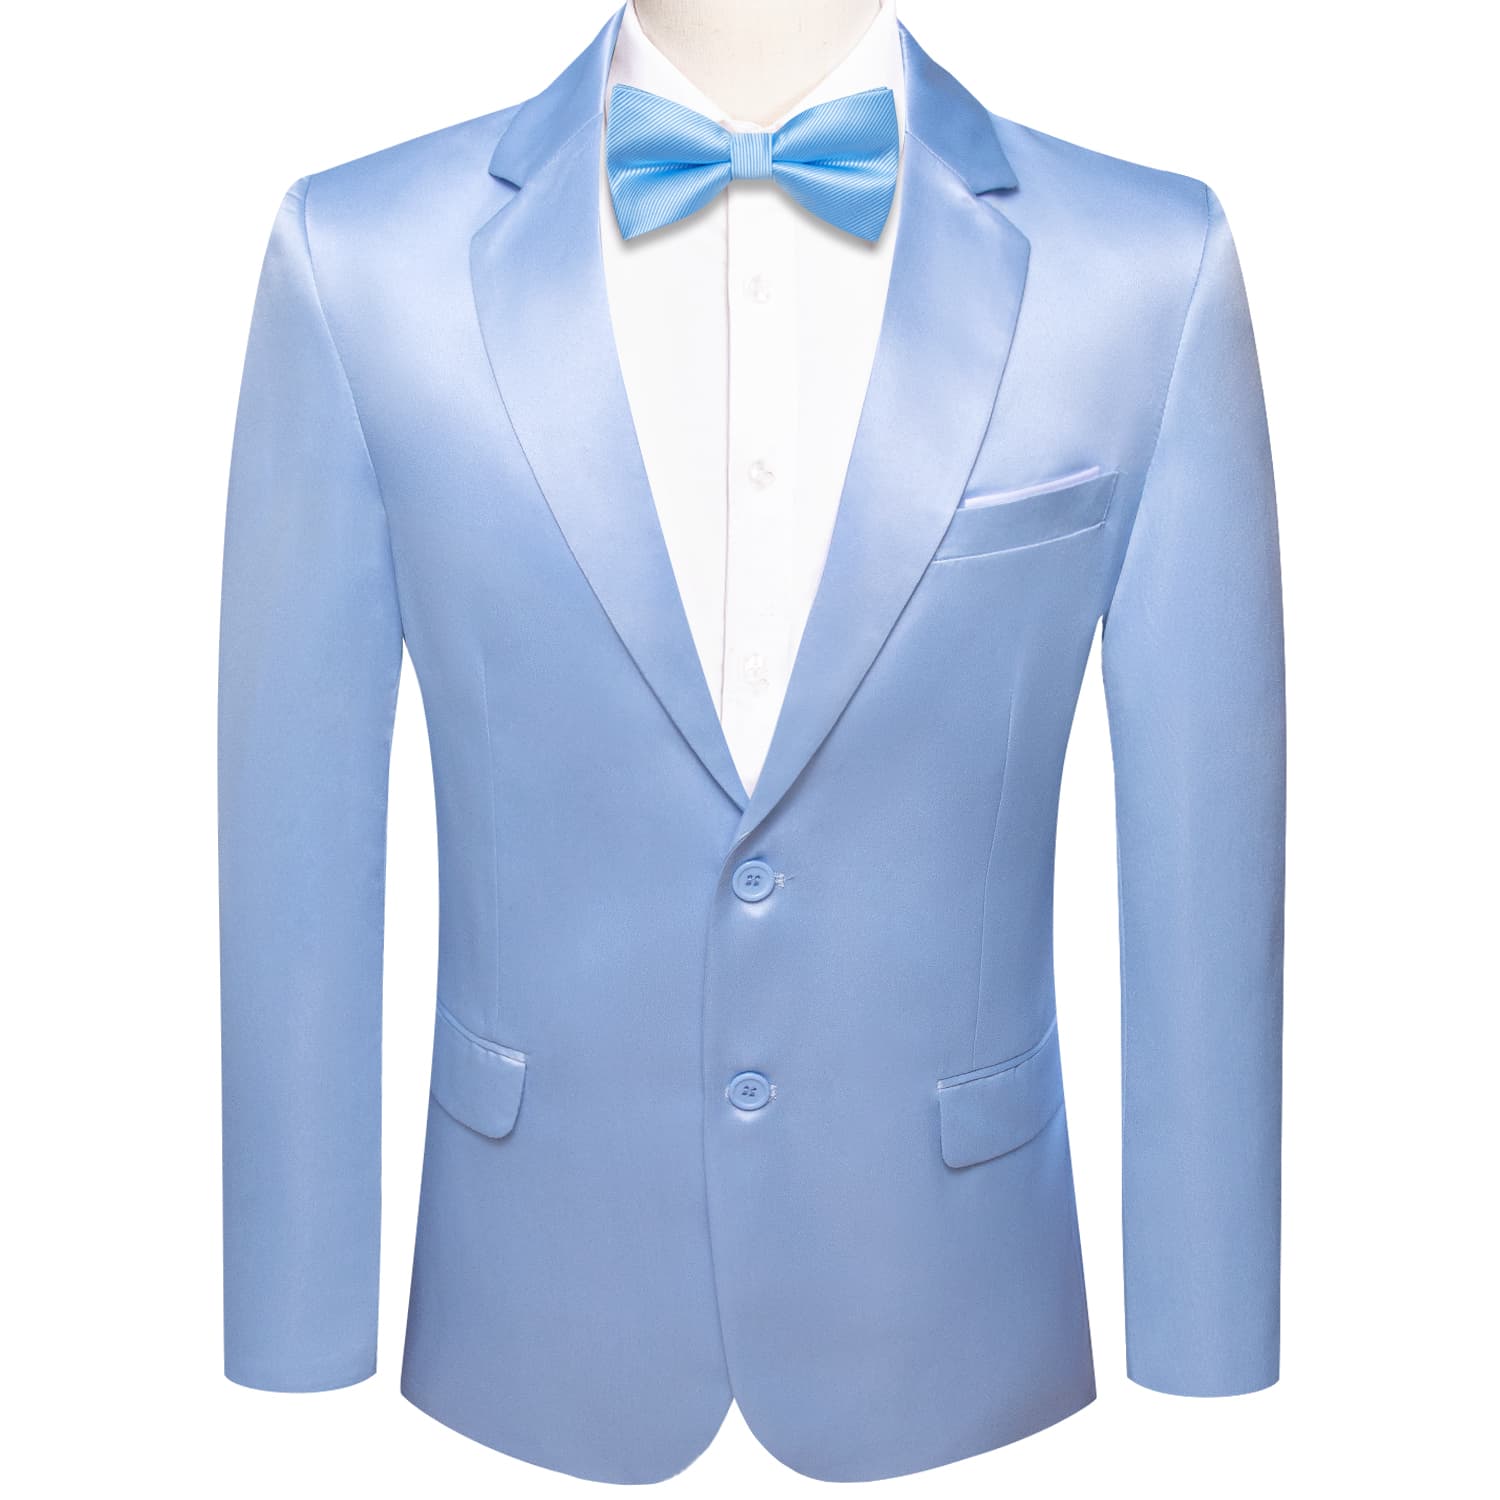 Blazer Sky Blue Men's Wedding Business Solid Top Men Suit